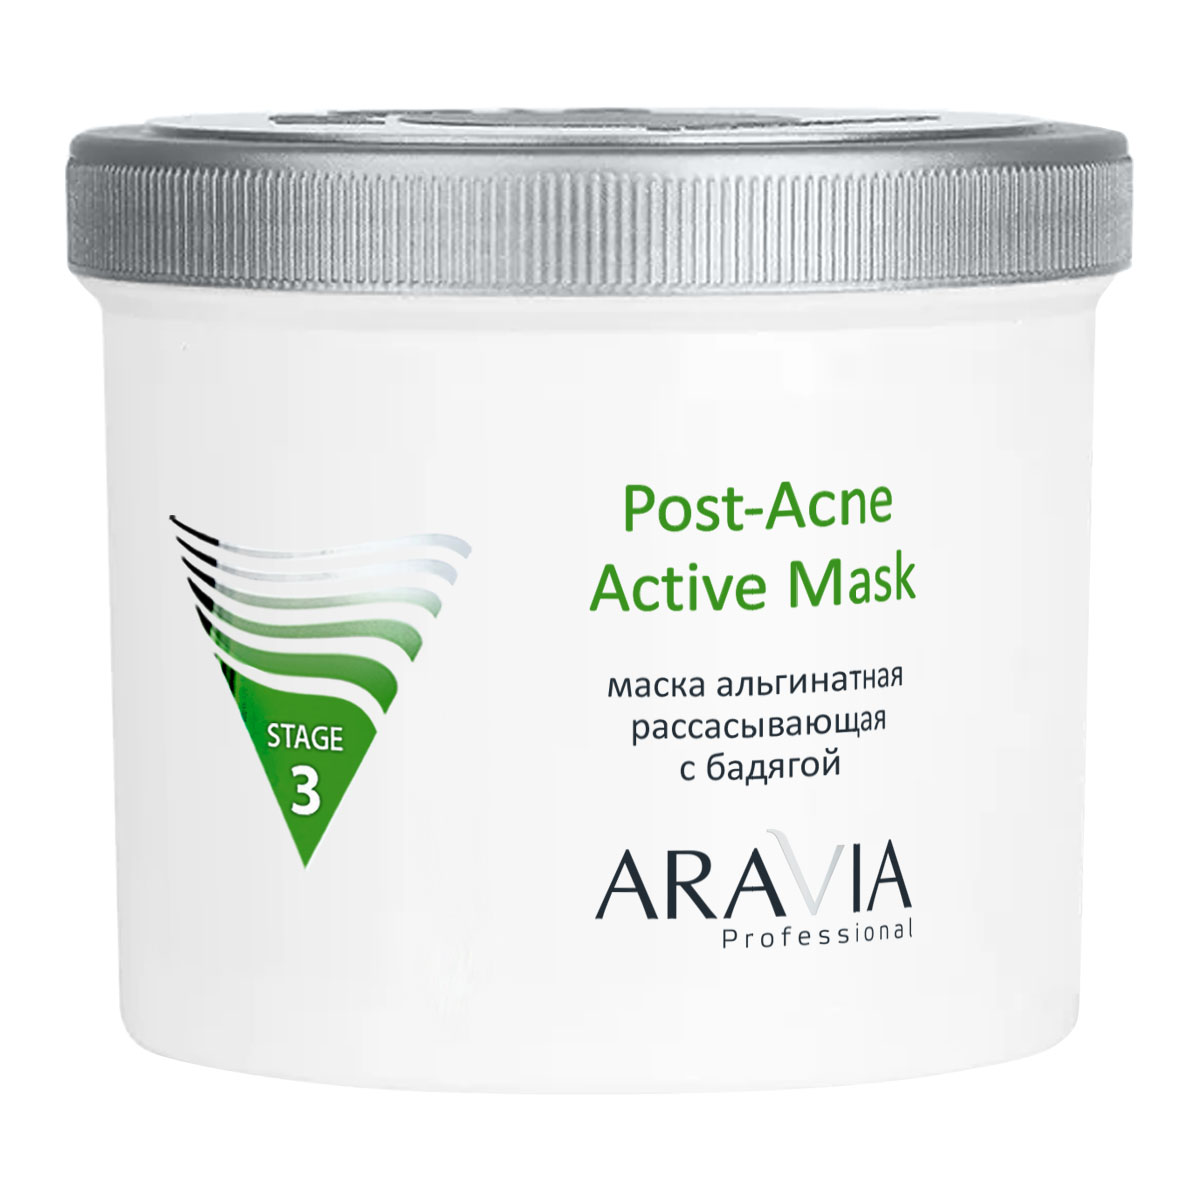 Aravia Professional Альгинатная рассасывающая маска с бадягой Post-Acne Active Mask, 550 мл (Aravia Professional, Уход за лицом) уход за лицом o care альгинатная маска для проблемной кожи с бадягой и хвощем